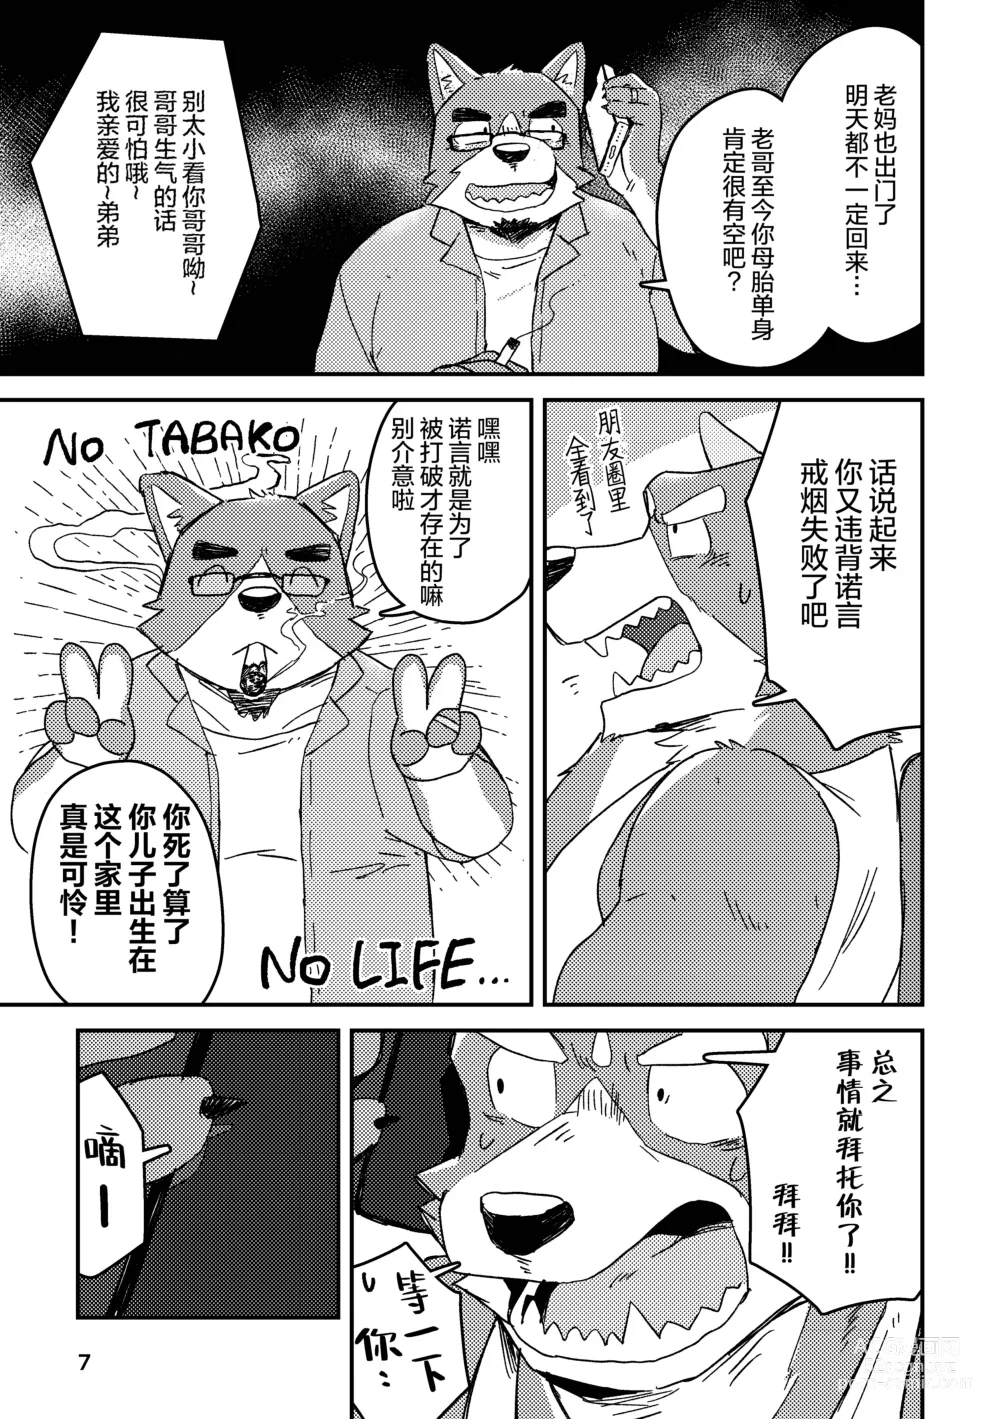 Page 7 of doujinshi 约定的龙穴